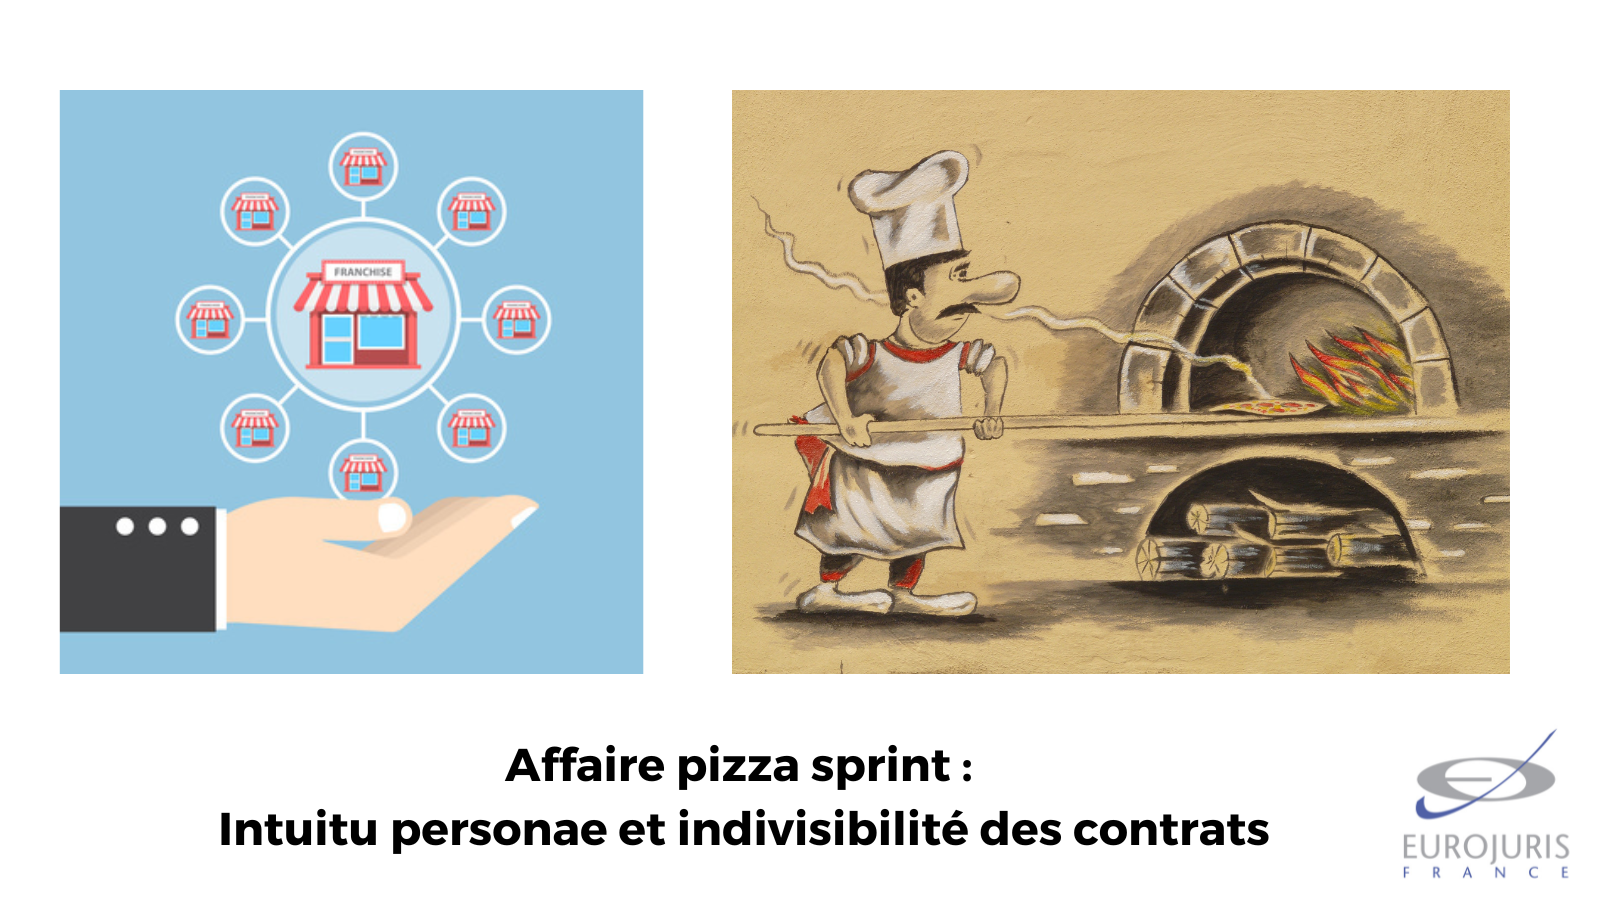 Franchise : Affaire pizza sprint : intuitu personae et indivisibilité des contrats